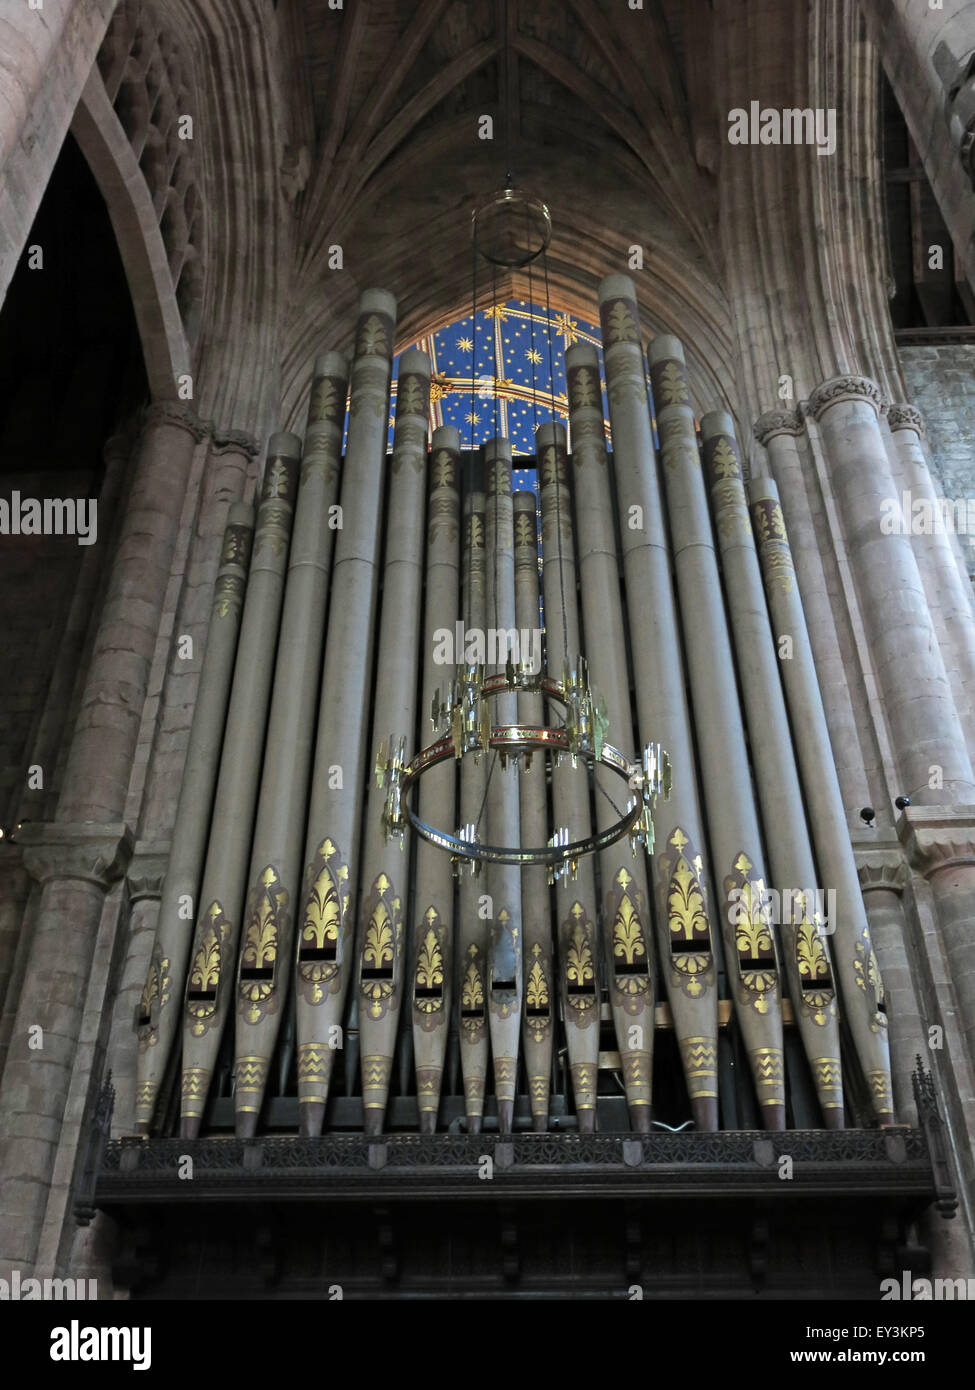 Tuyaux d'orgue cathédrale de Carlisle, Cumbria, Angleterre, Royaume-Uni Banque D'Images